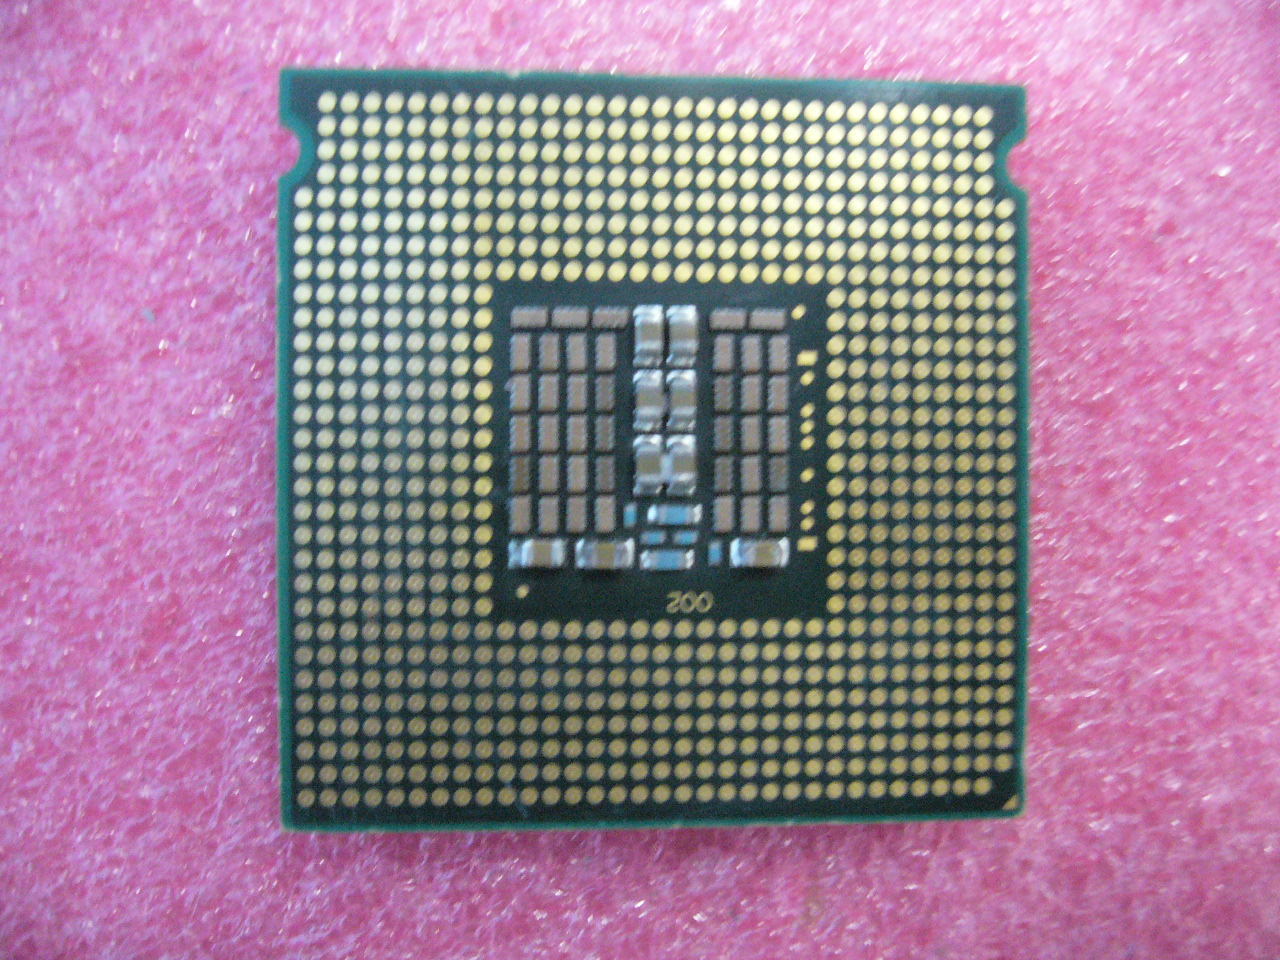 QTY 1x Intel Xeon CPU Quad Core E5450 3.00Ghz/12MB/1333Mhz LGA771 SLBBM - Click Image to Close